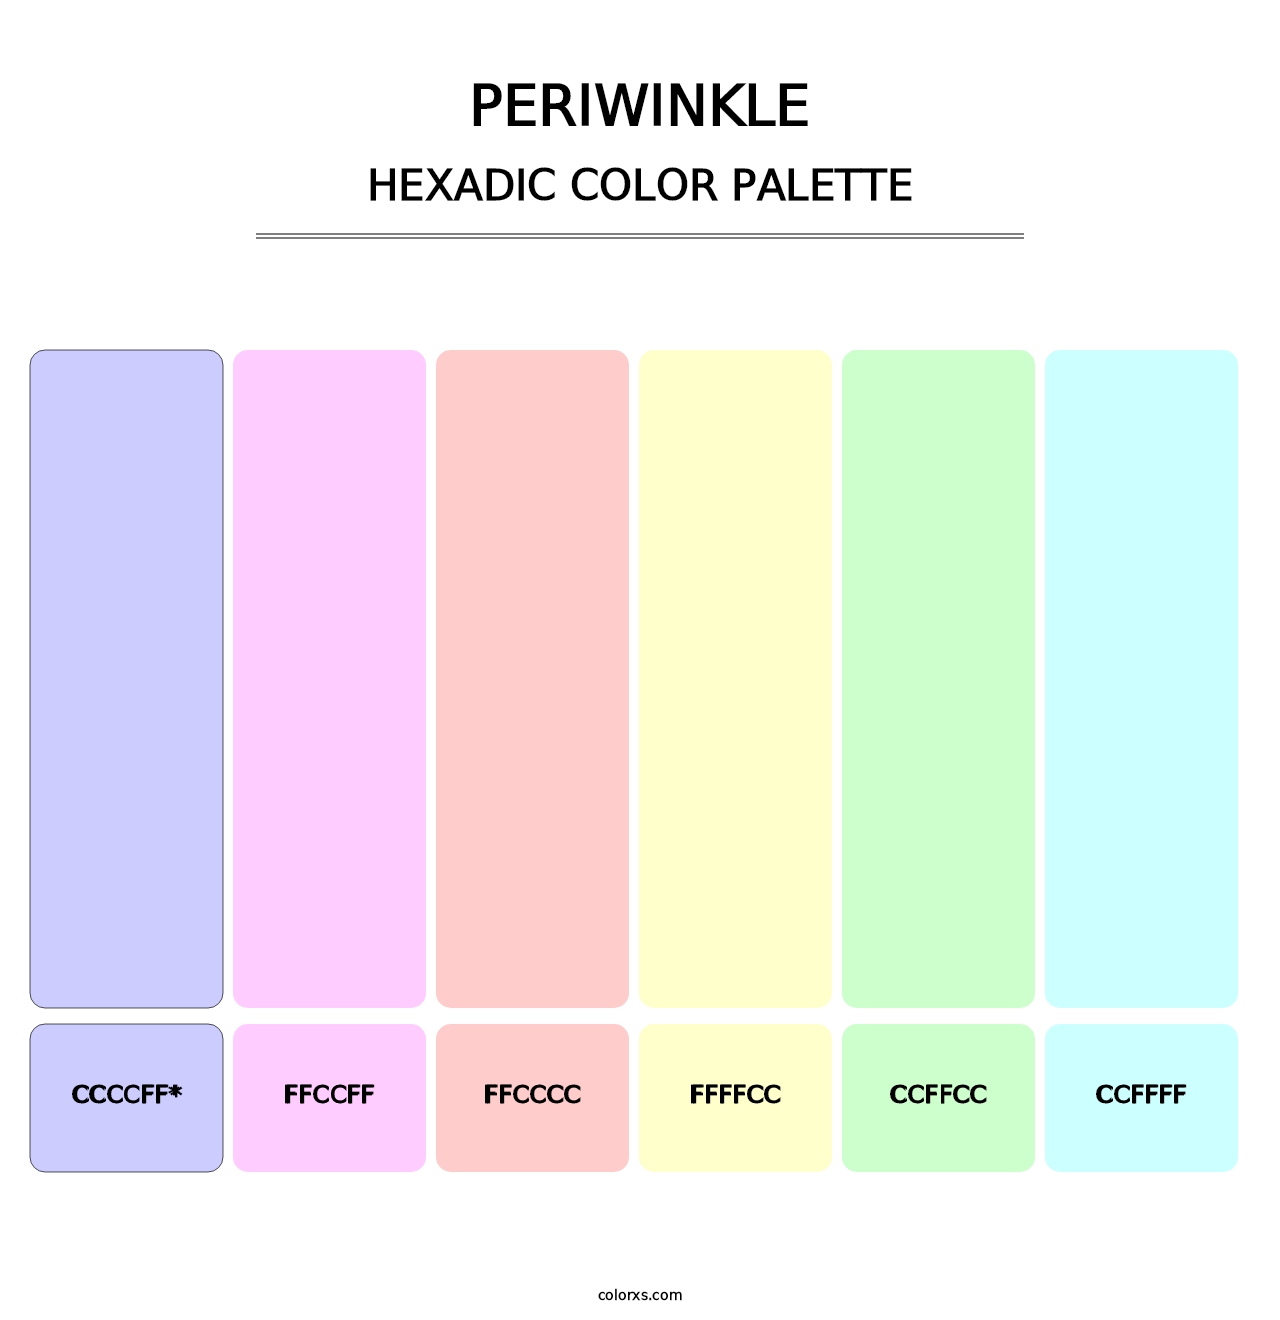 Periwinkle - Hexadic Color Palette